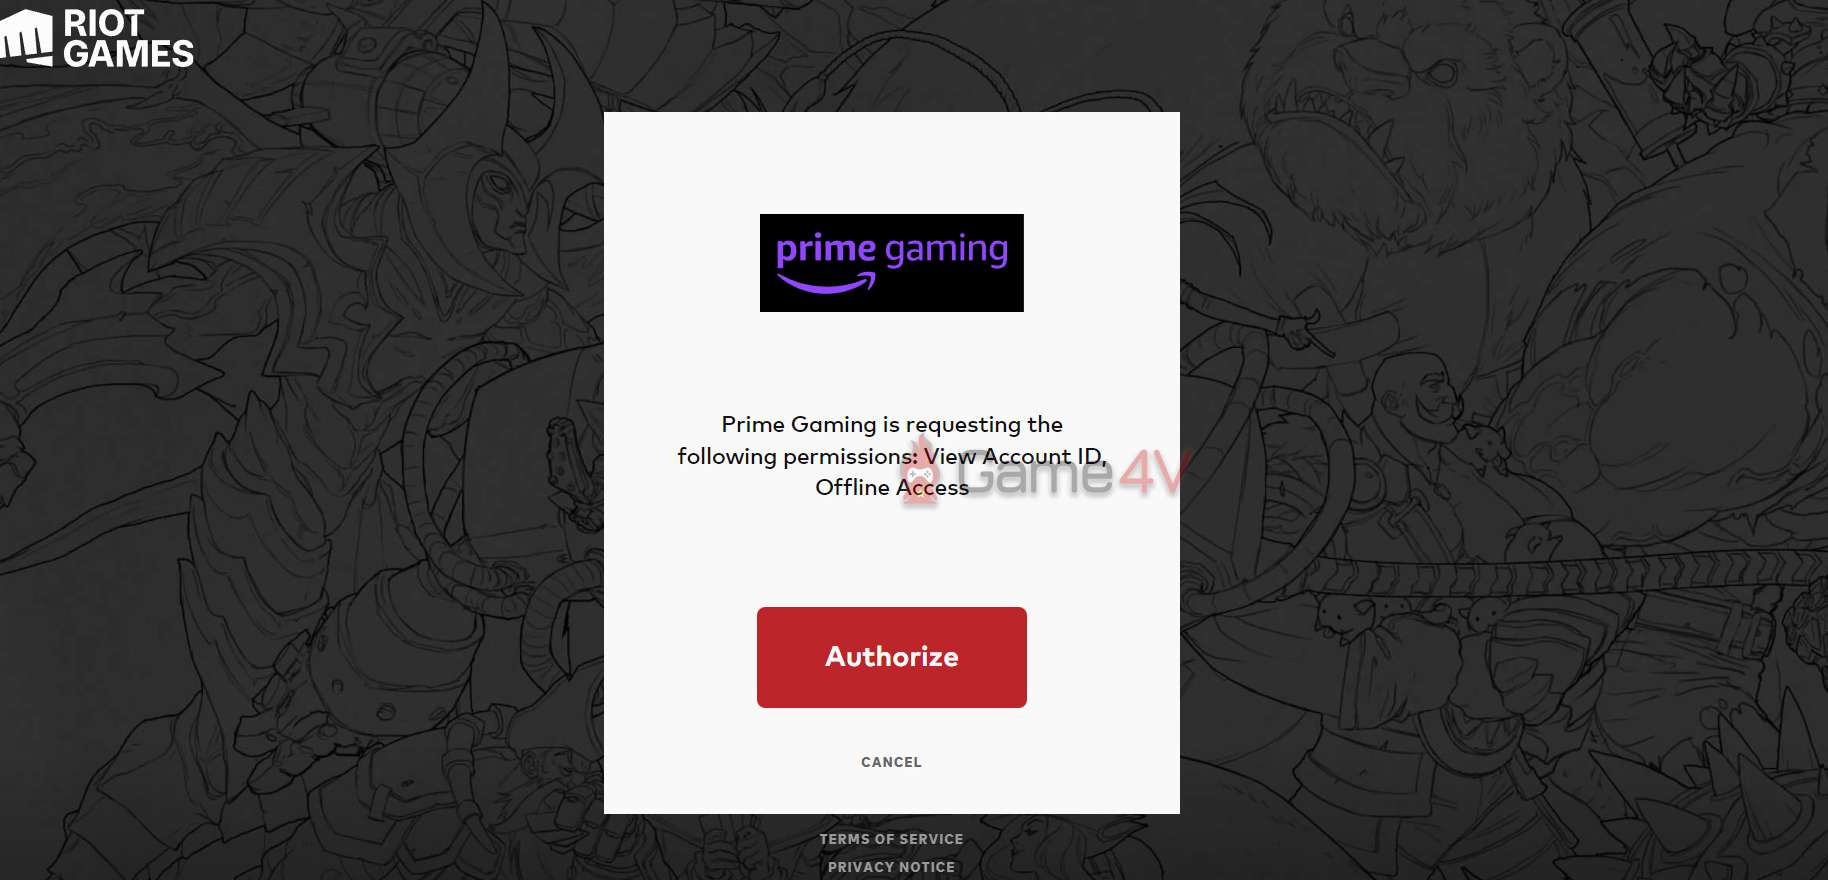 Đường link sẽ dẫn sang website của Riot Games, đăng nhập tài khoản Riot và ấn "Authorize".